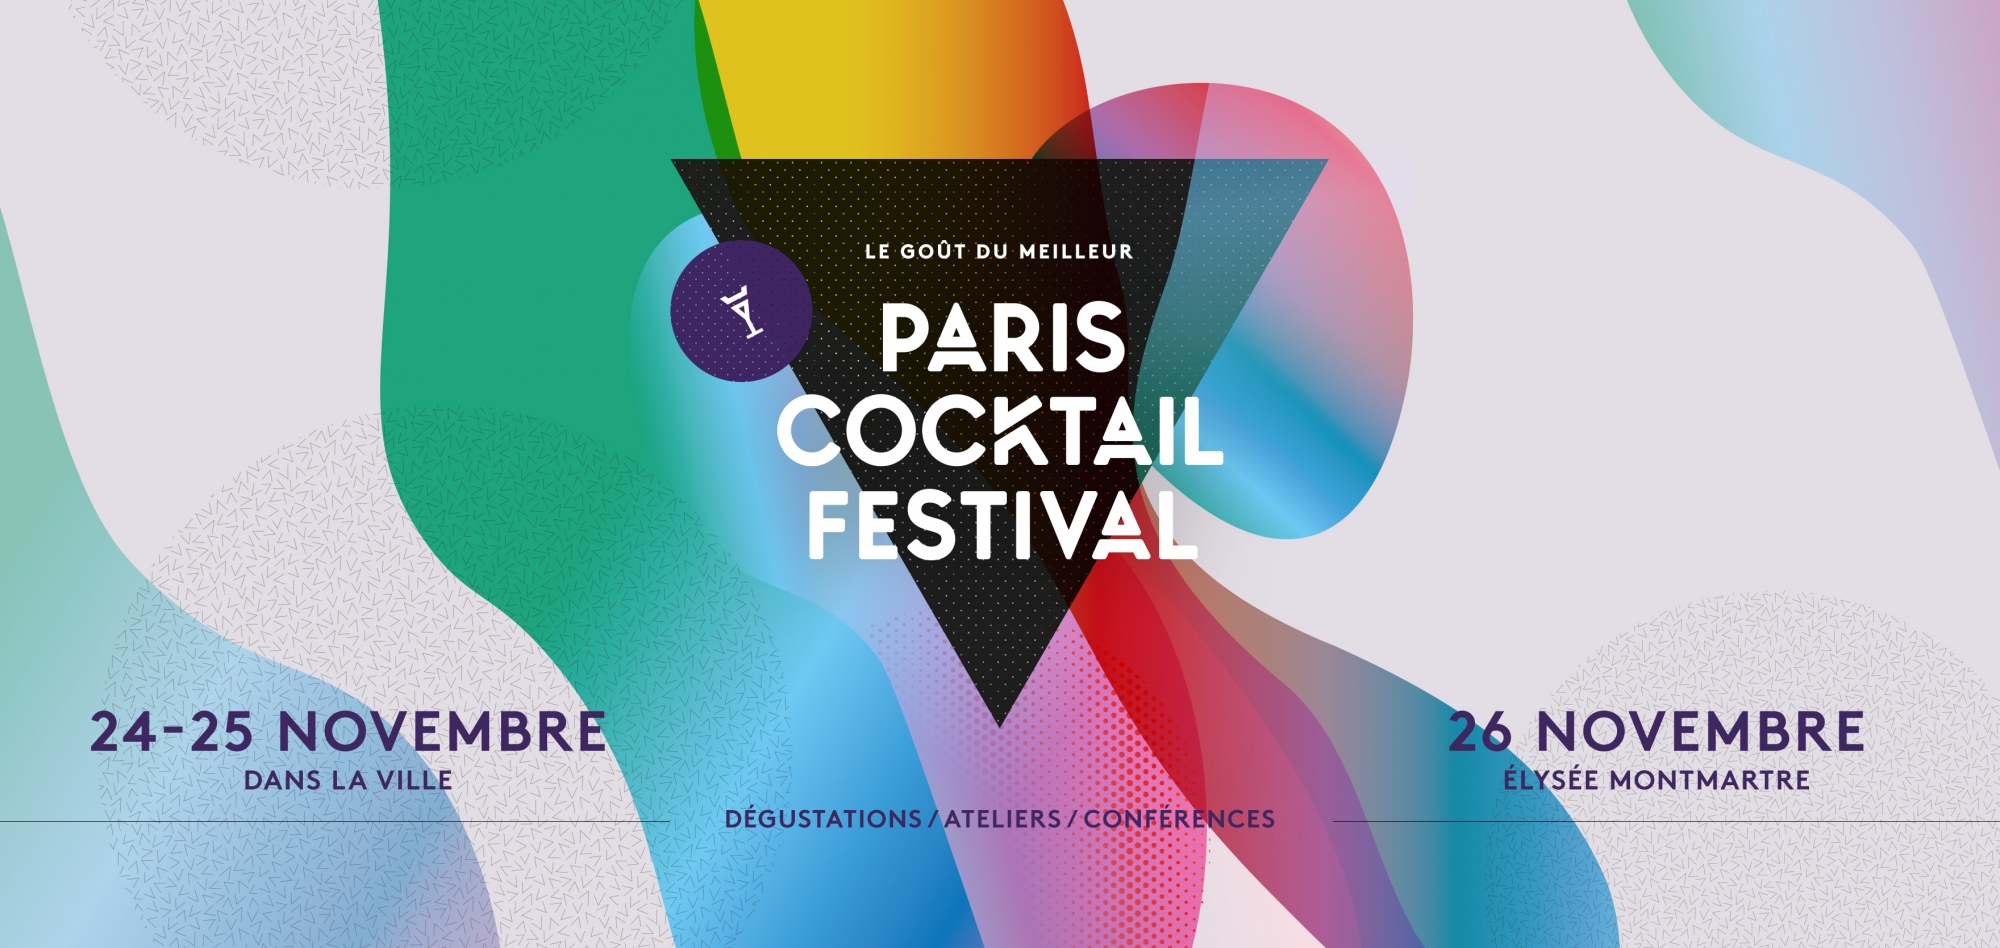 Le Paris Cocktail Festival, du 24 au 26 novembre 2017 dans Paris et à l'Elysée Montmartre